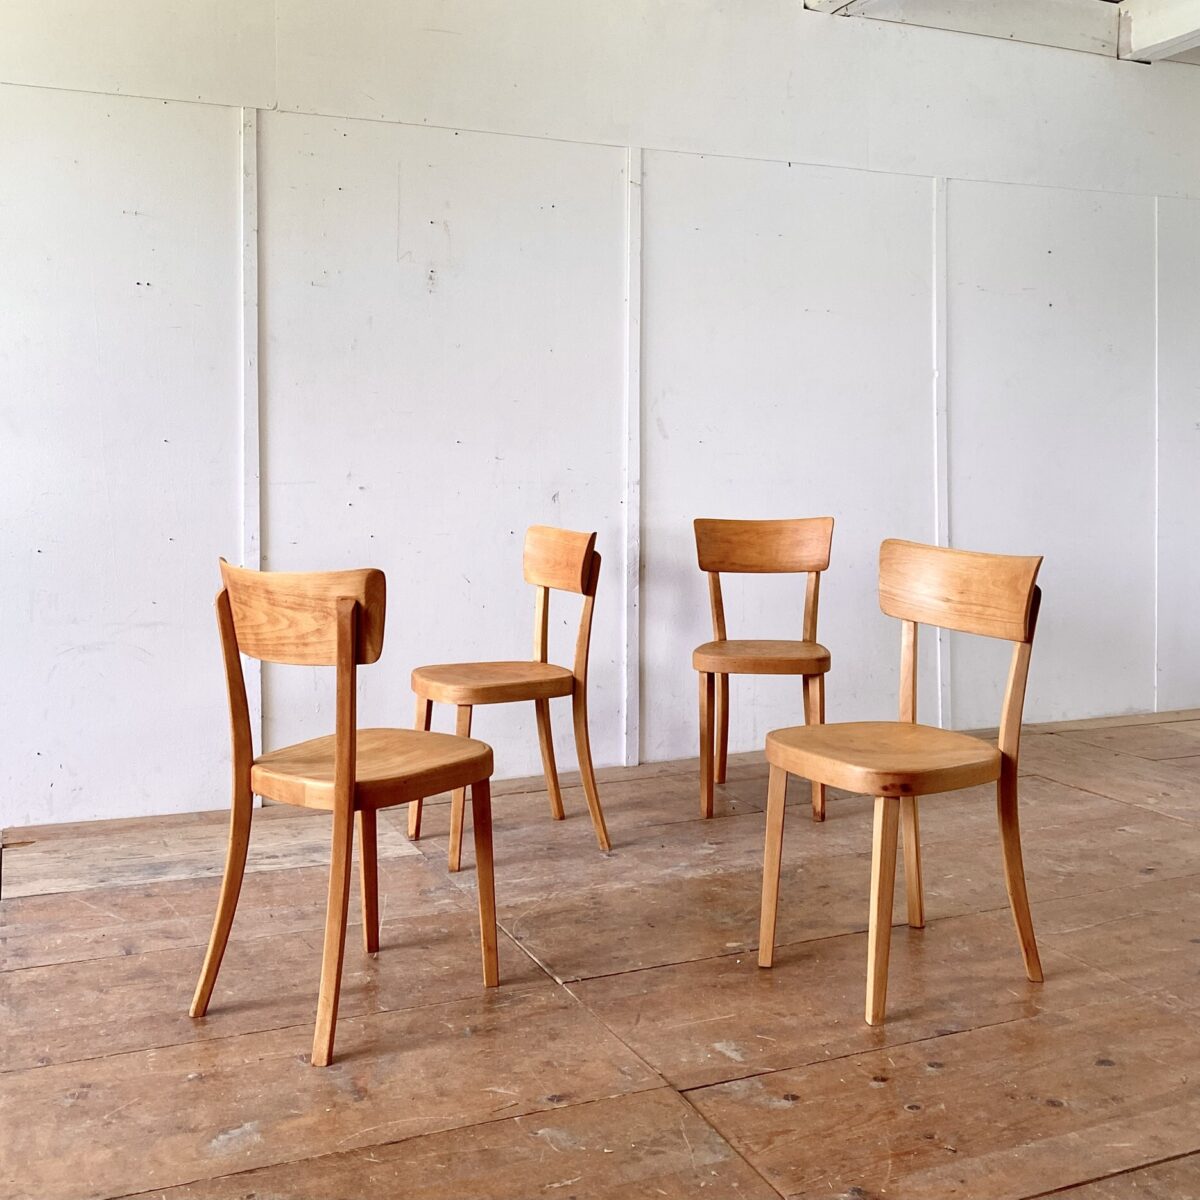 Deuxieme.shop horgenglarus Classic Stühle. 4er Set Beizenstühle mit Alterspatina geschliffen und geölt. Technisch in stabilem Zustand, warm-matte Ausstrahlung. Ein grösseres Set ist nach Absprache verfügbar. 